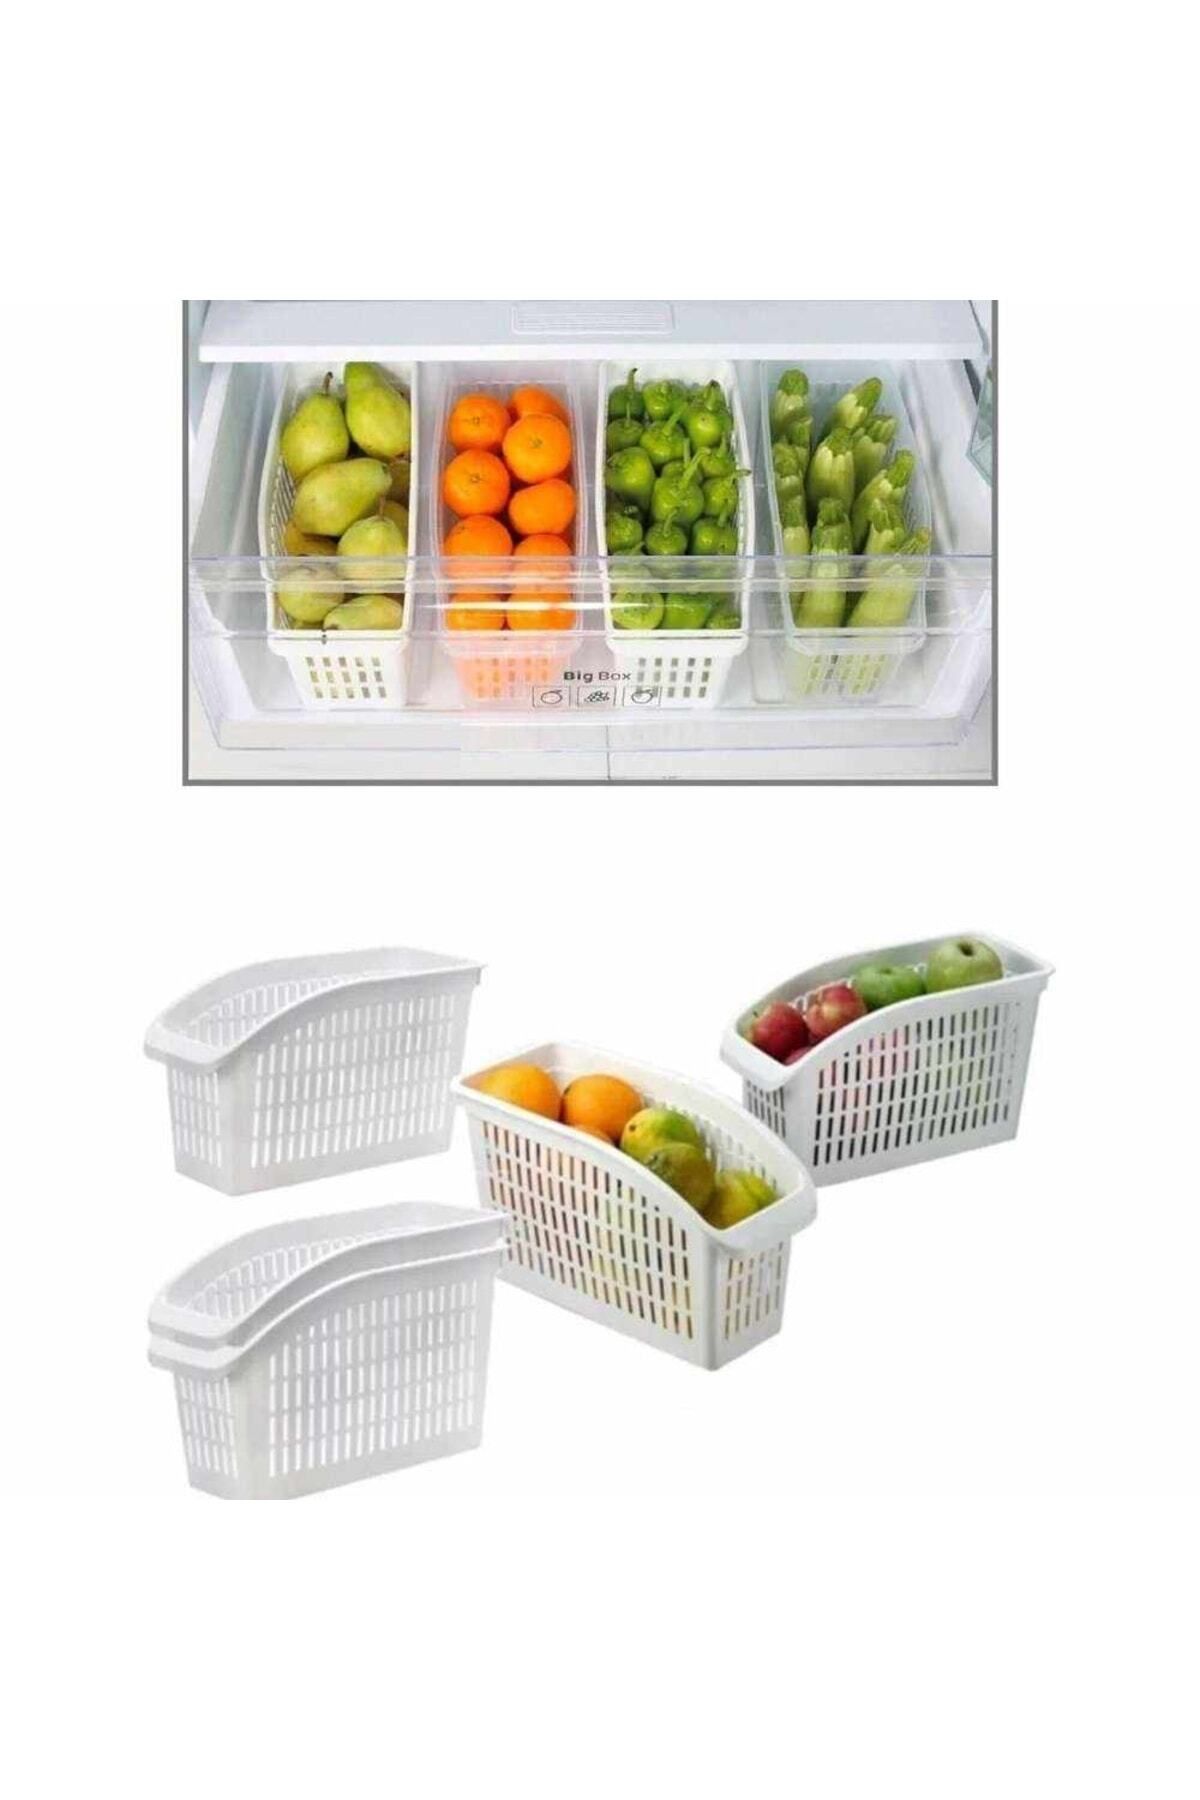 incirop Buzdolabı Içi Sebze Ve Meyve Düzenleyici Organizer 2 Adet